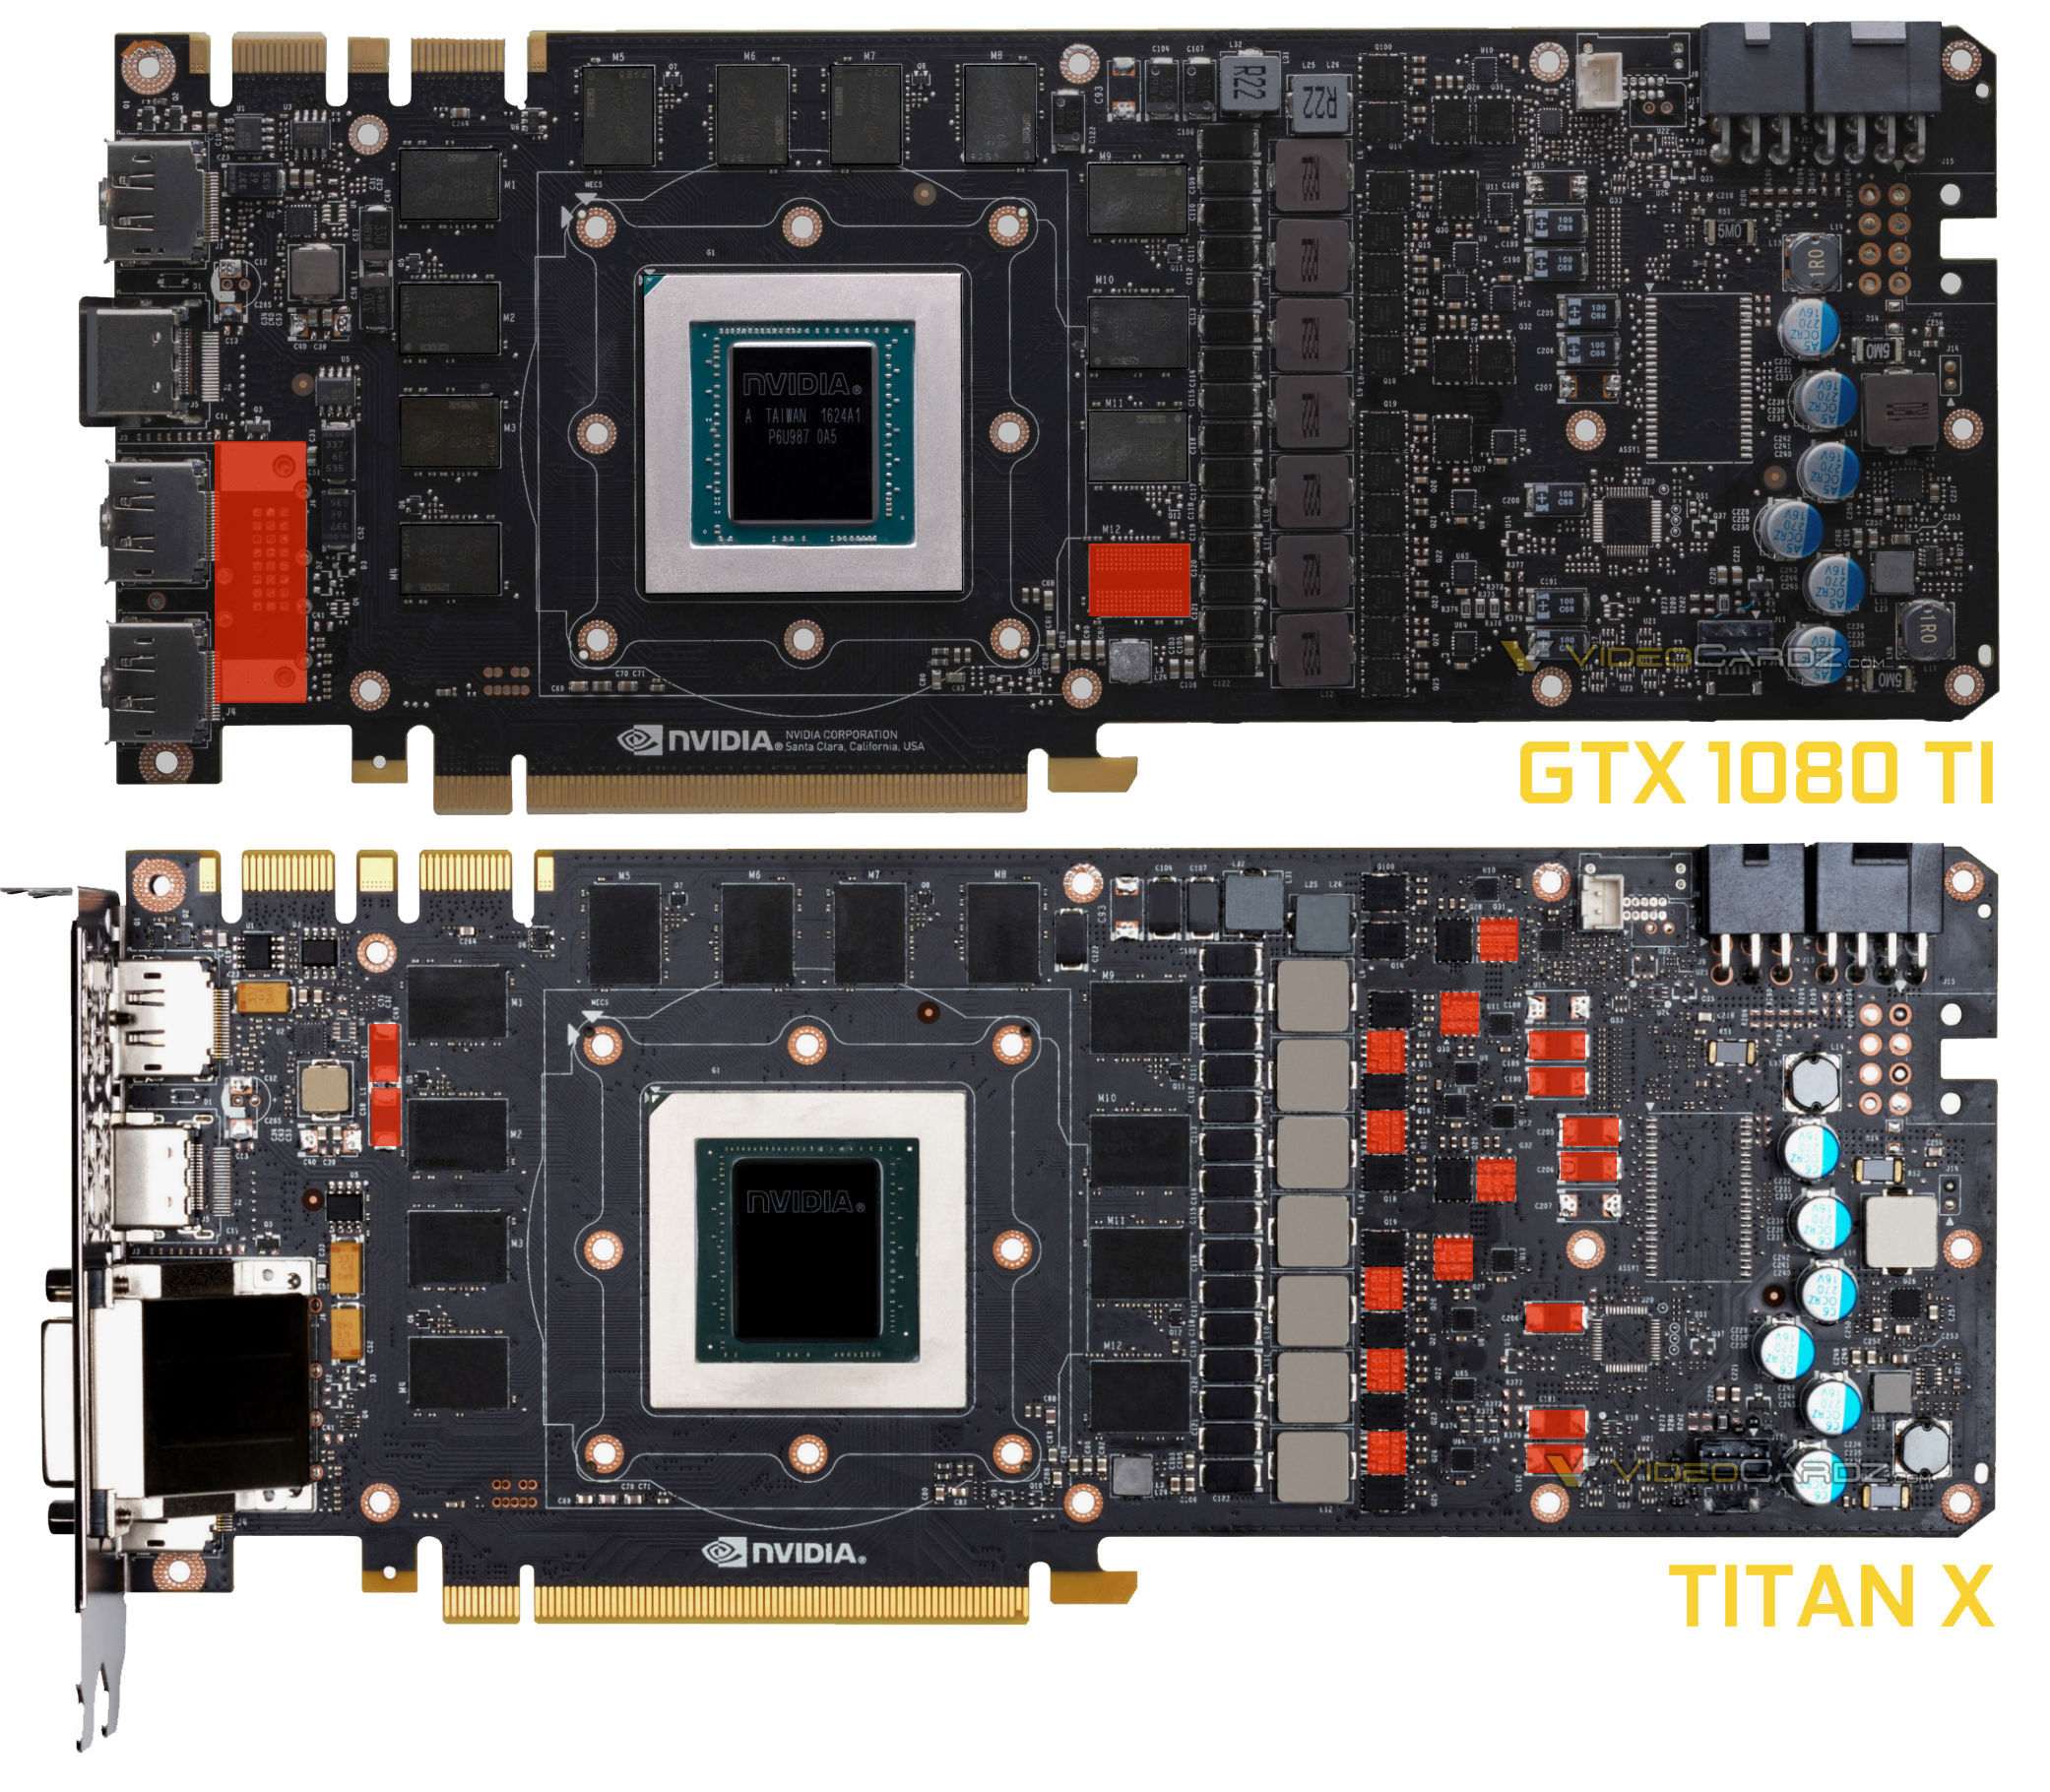 Immagine pubblicata in relazione al seguente contenuto: A confronto i PCB delle video card NVIDIA GeForce GTX 1080 Ti e della TITAN X | Nome immagine: news25939_GeForce-GTX-1080-Ti-Founders-Edition_3.jpg